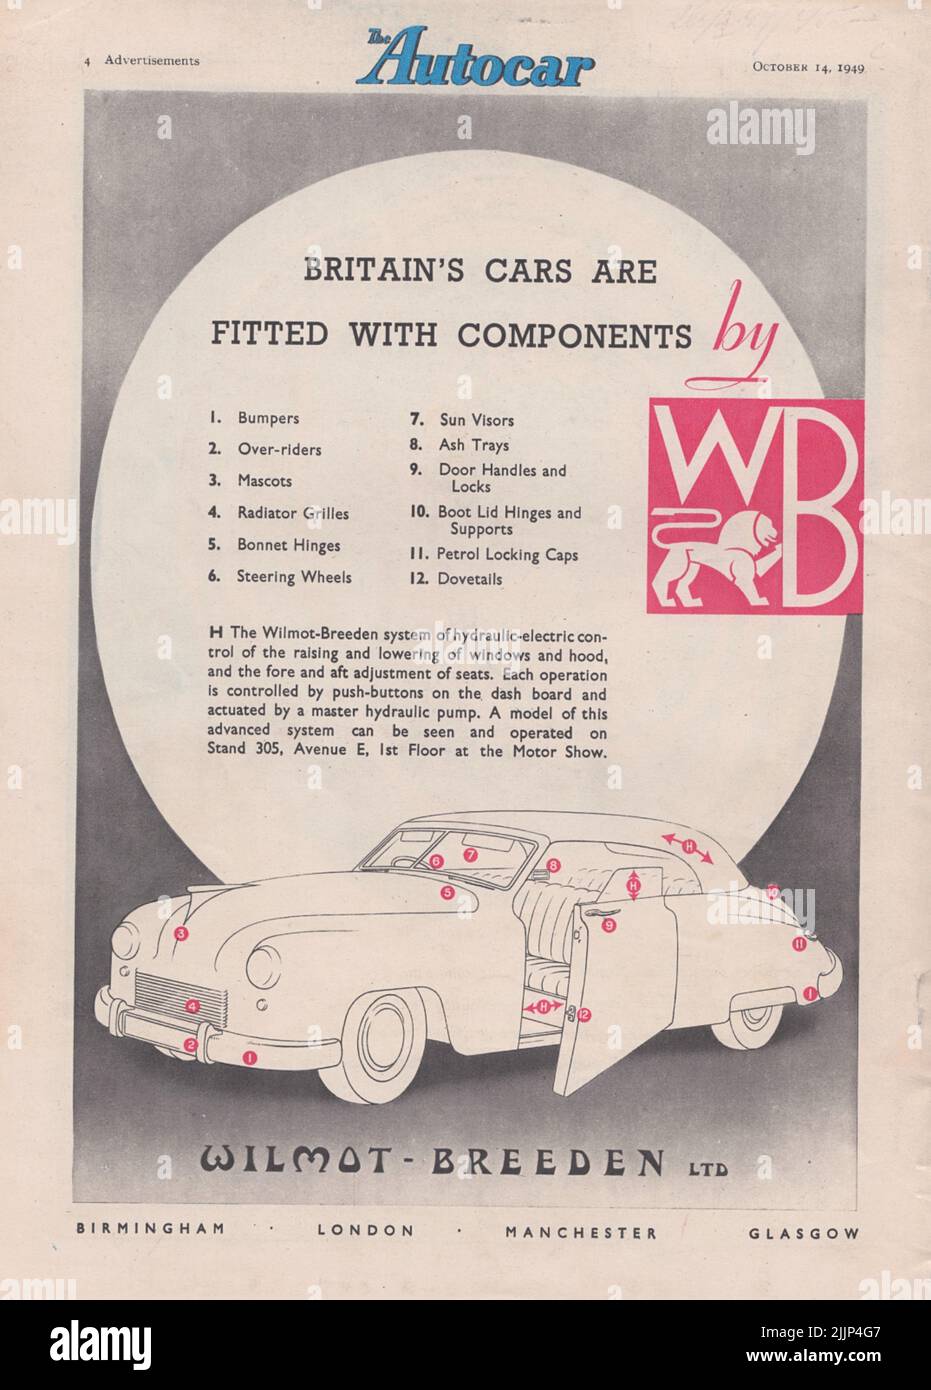 Wilmot-Breeden Ltd tappare la benzina vecchia pubblicità vintage da una rivista di auto del Regno Unito Foto Stock